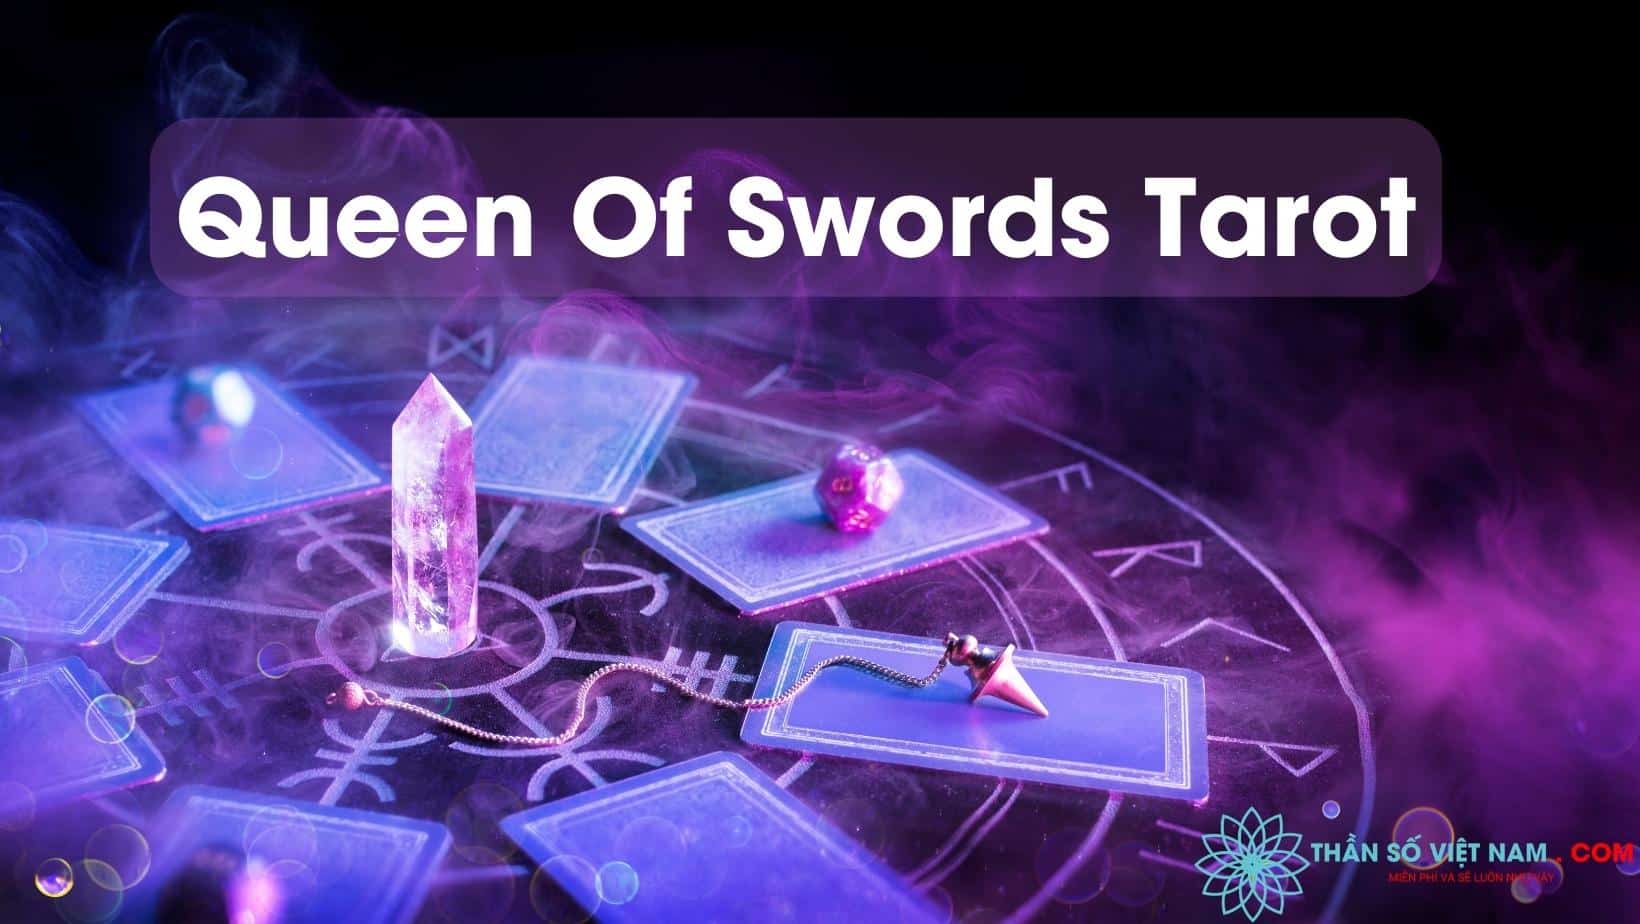 Tarot Queen Of Swords - ý nghĩa xuôi, ngược: Những bí mật của Tarot Queen Of Swords - lá bài mang ý nghĩa rất đặc biệt với cả xuôi và ngược sẽ được tiết lộ ngay trên hình ảnh đính kèm. Hãy cùng xem và khám phá những bí mật và ý nghĩa tiên tri chi tiết của lá bài này nhé!